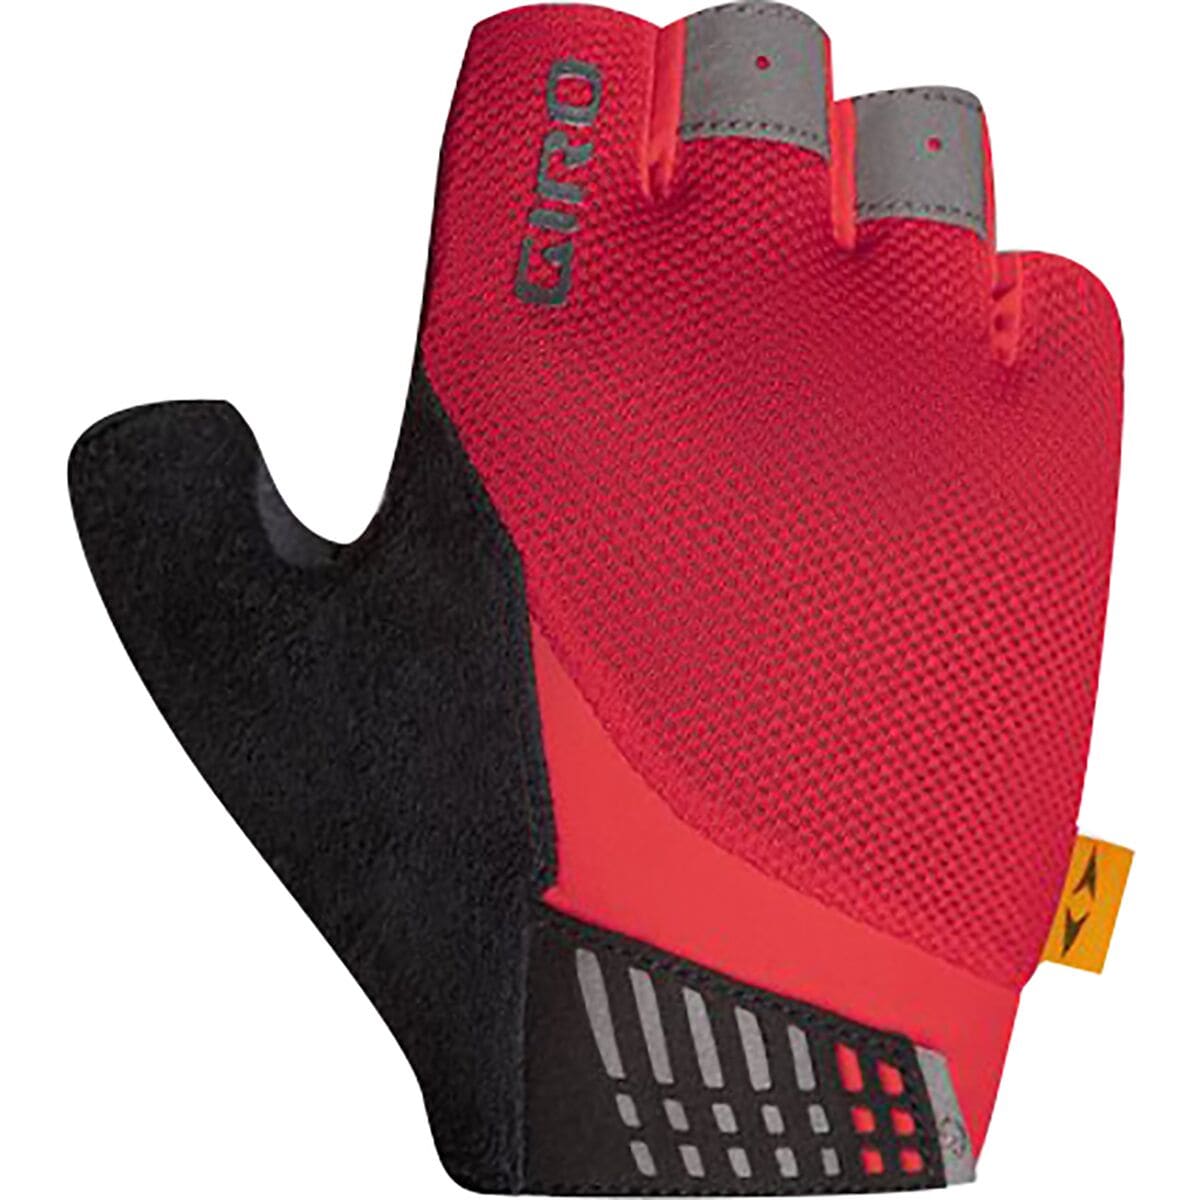 Giro Supernatural Glove - Women's Trim Red, M